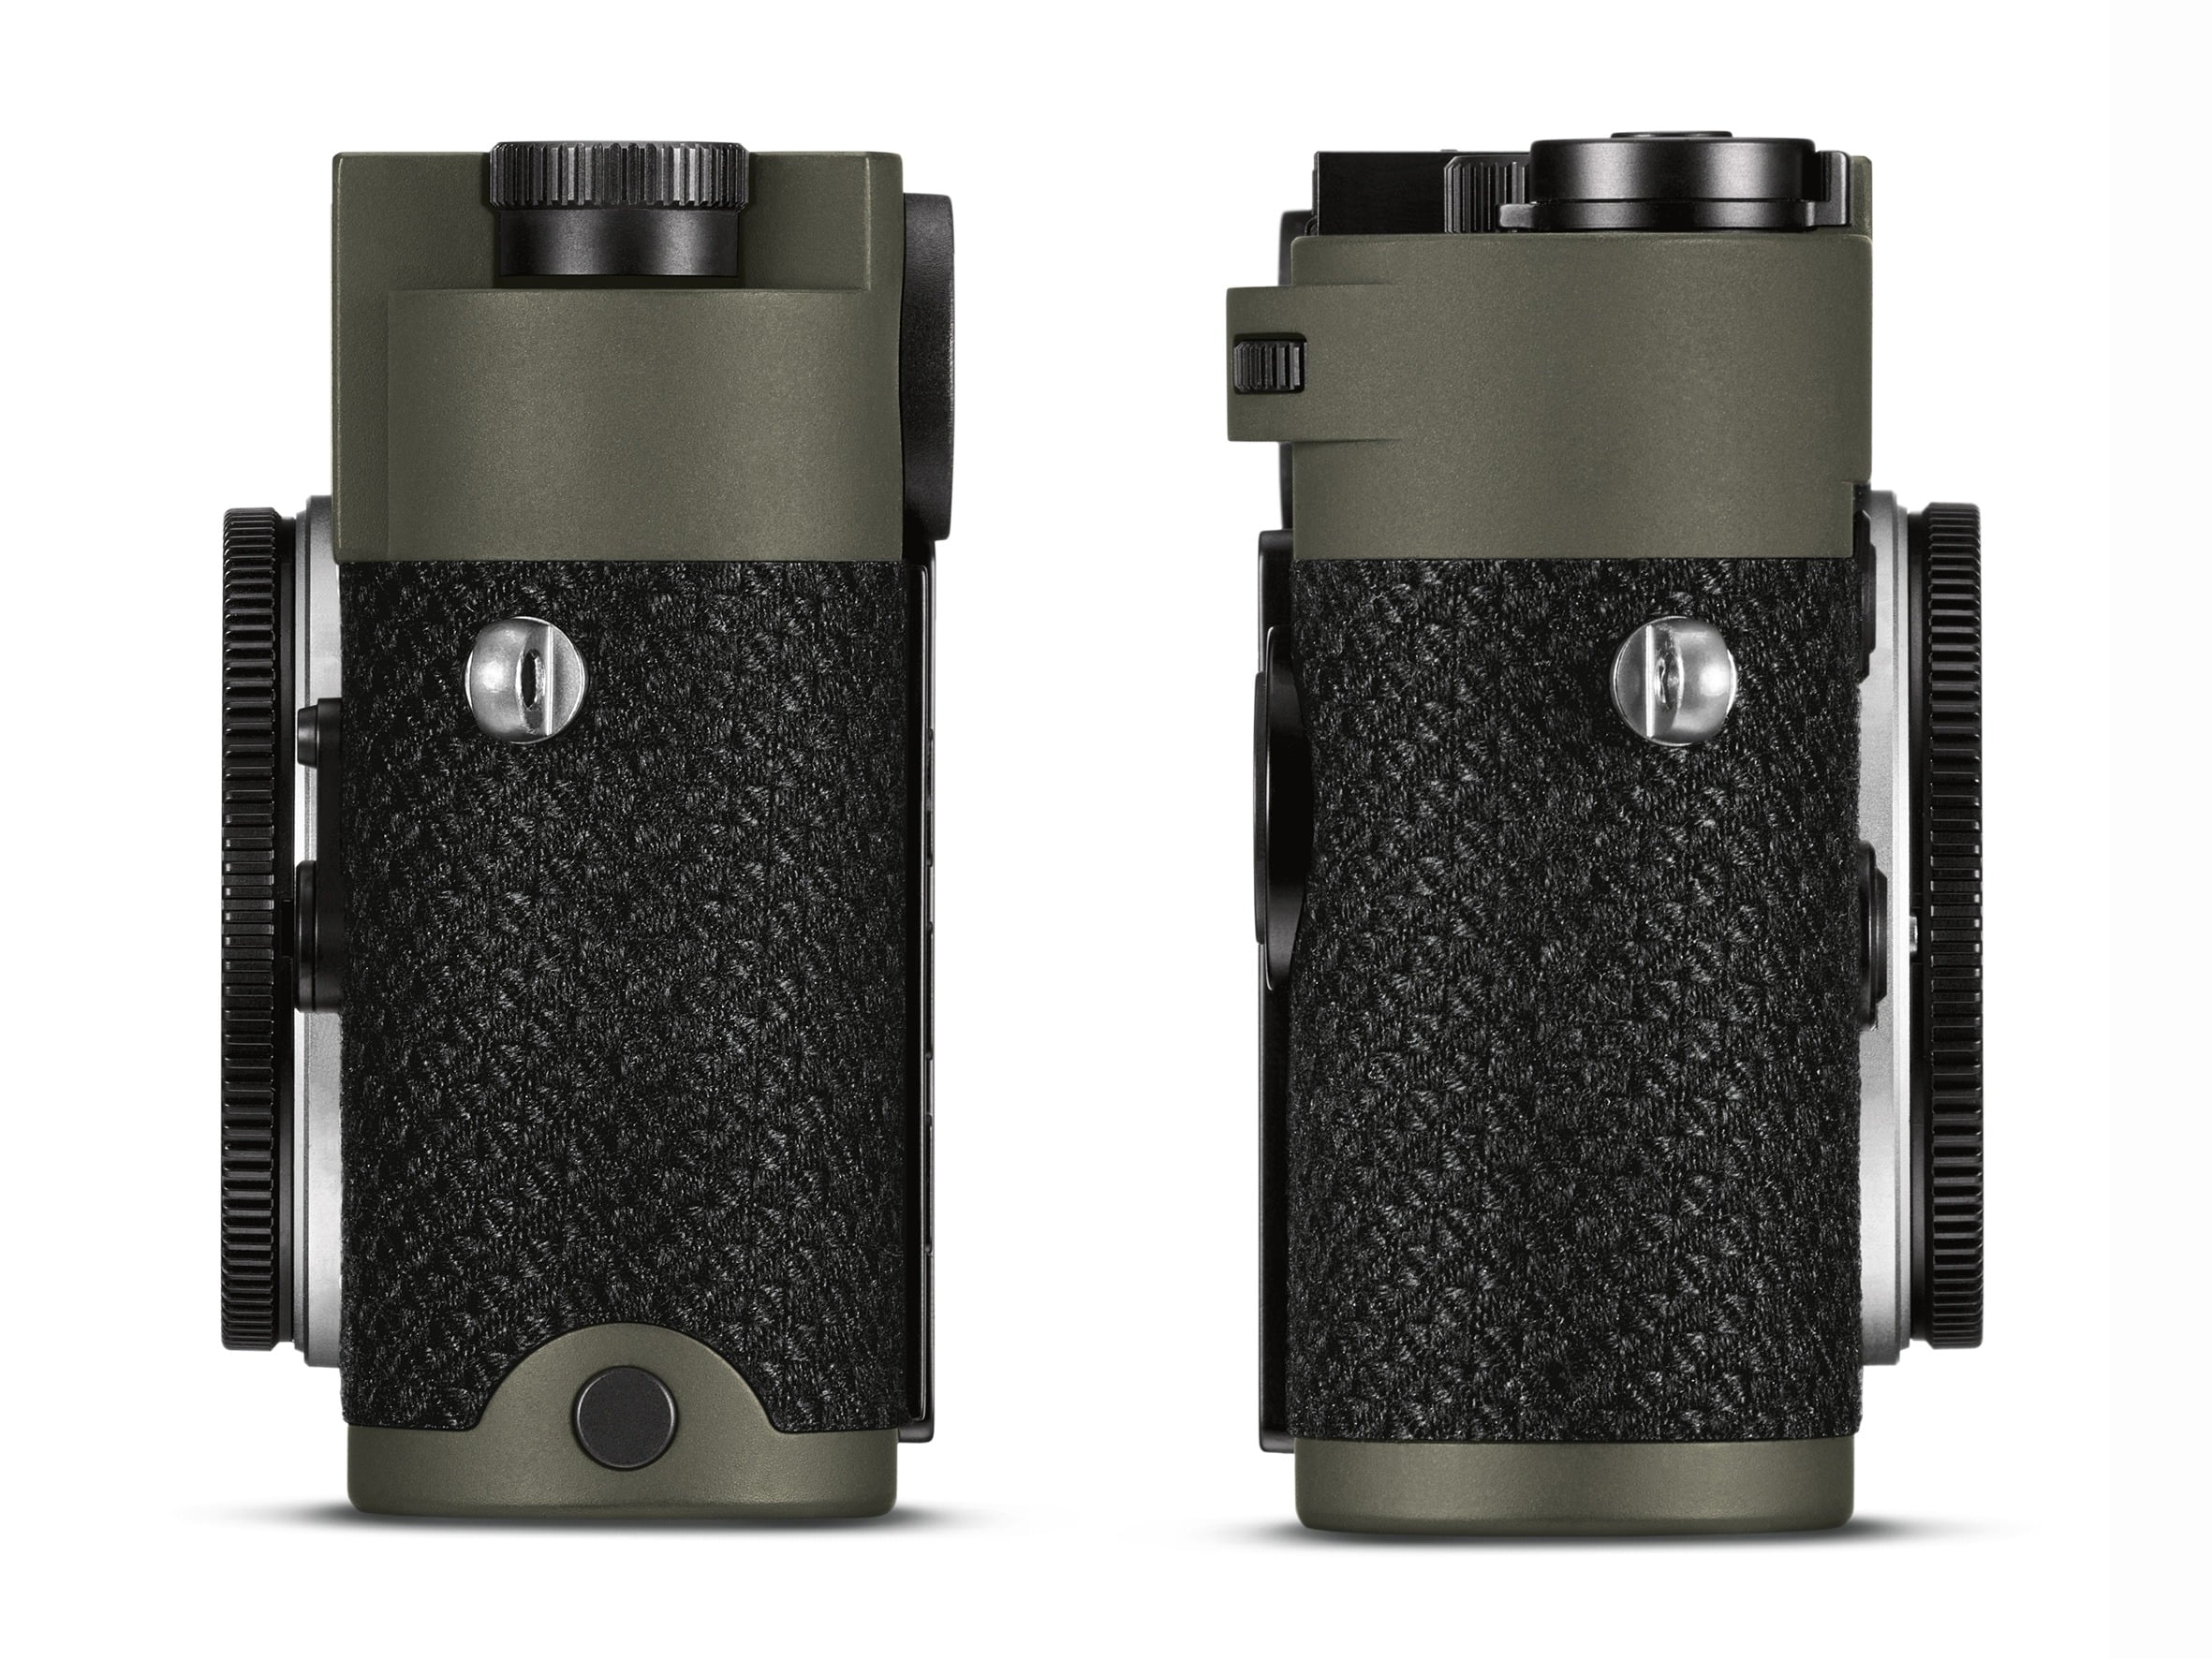 Leica ra mắt phiên bản M10-P Reporter với lớp vỏ Kevlar chống đạn